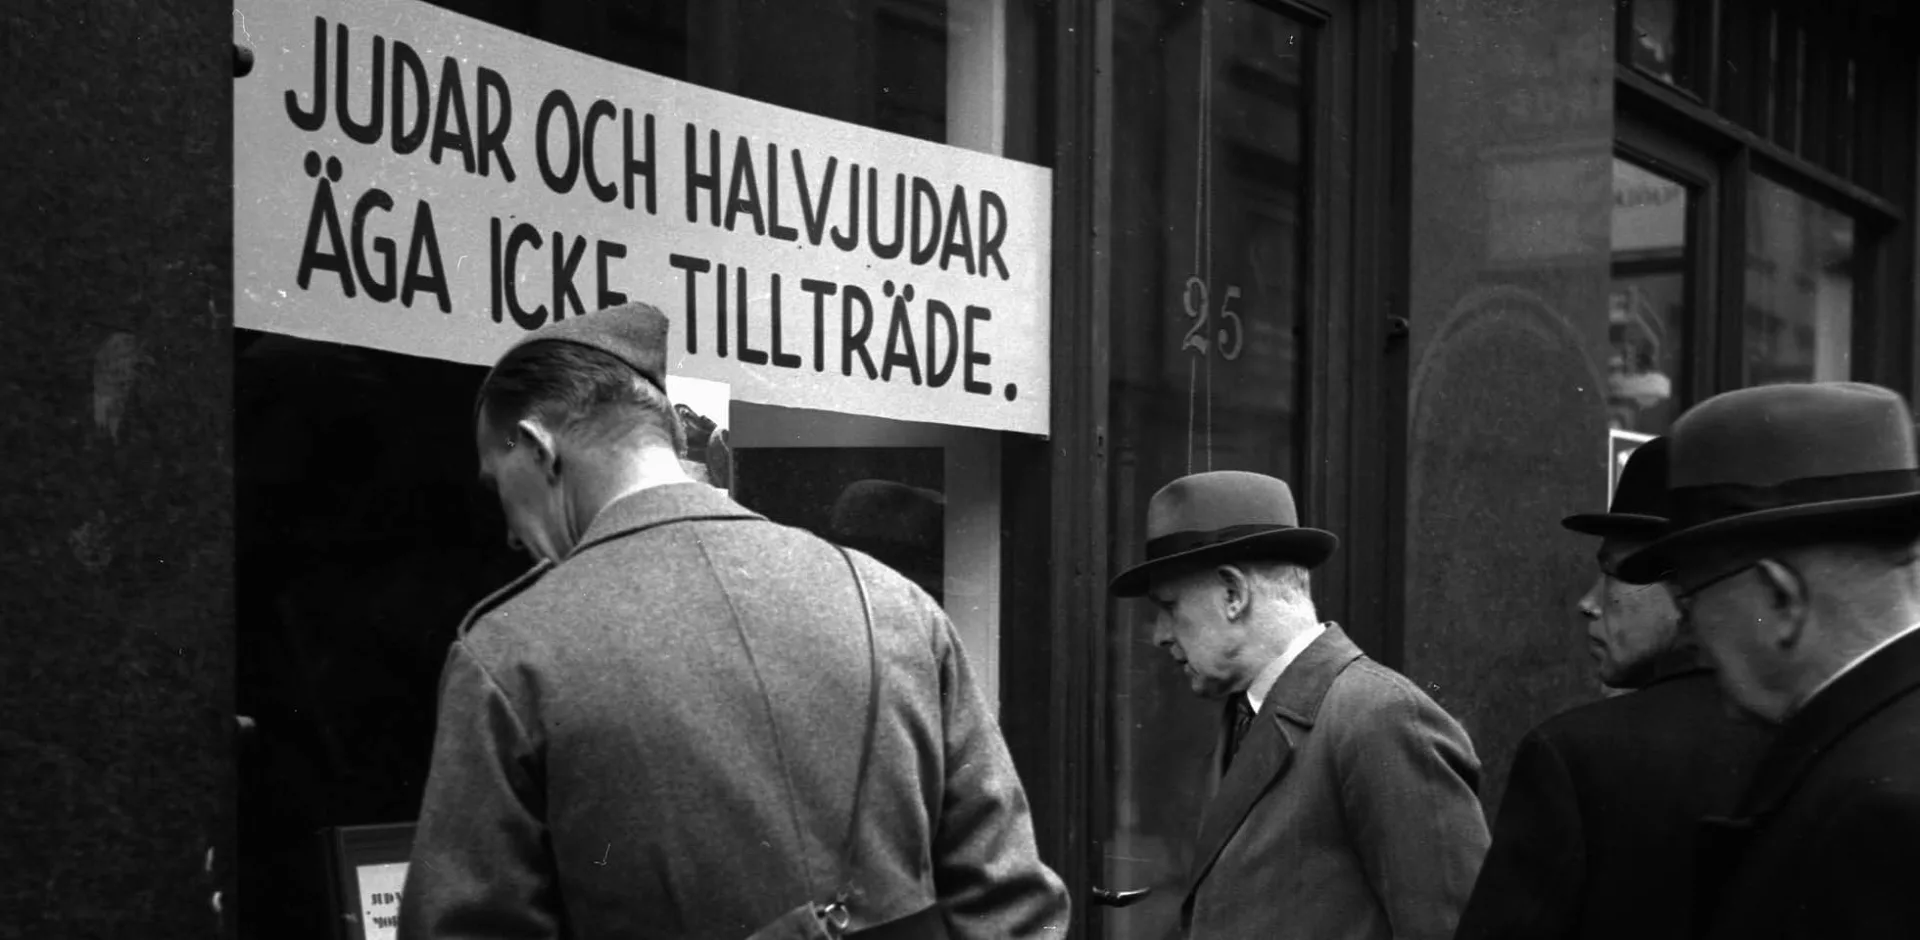 Rasism i Stockholm, oktober 1941. Antisemitisk skyltning i bokhandel. På skylten står det: "Judar och halvjudar äga icke tillträde."